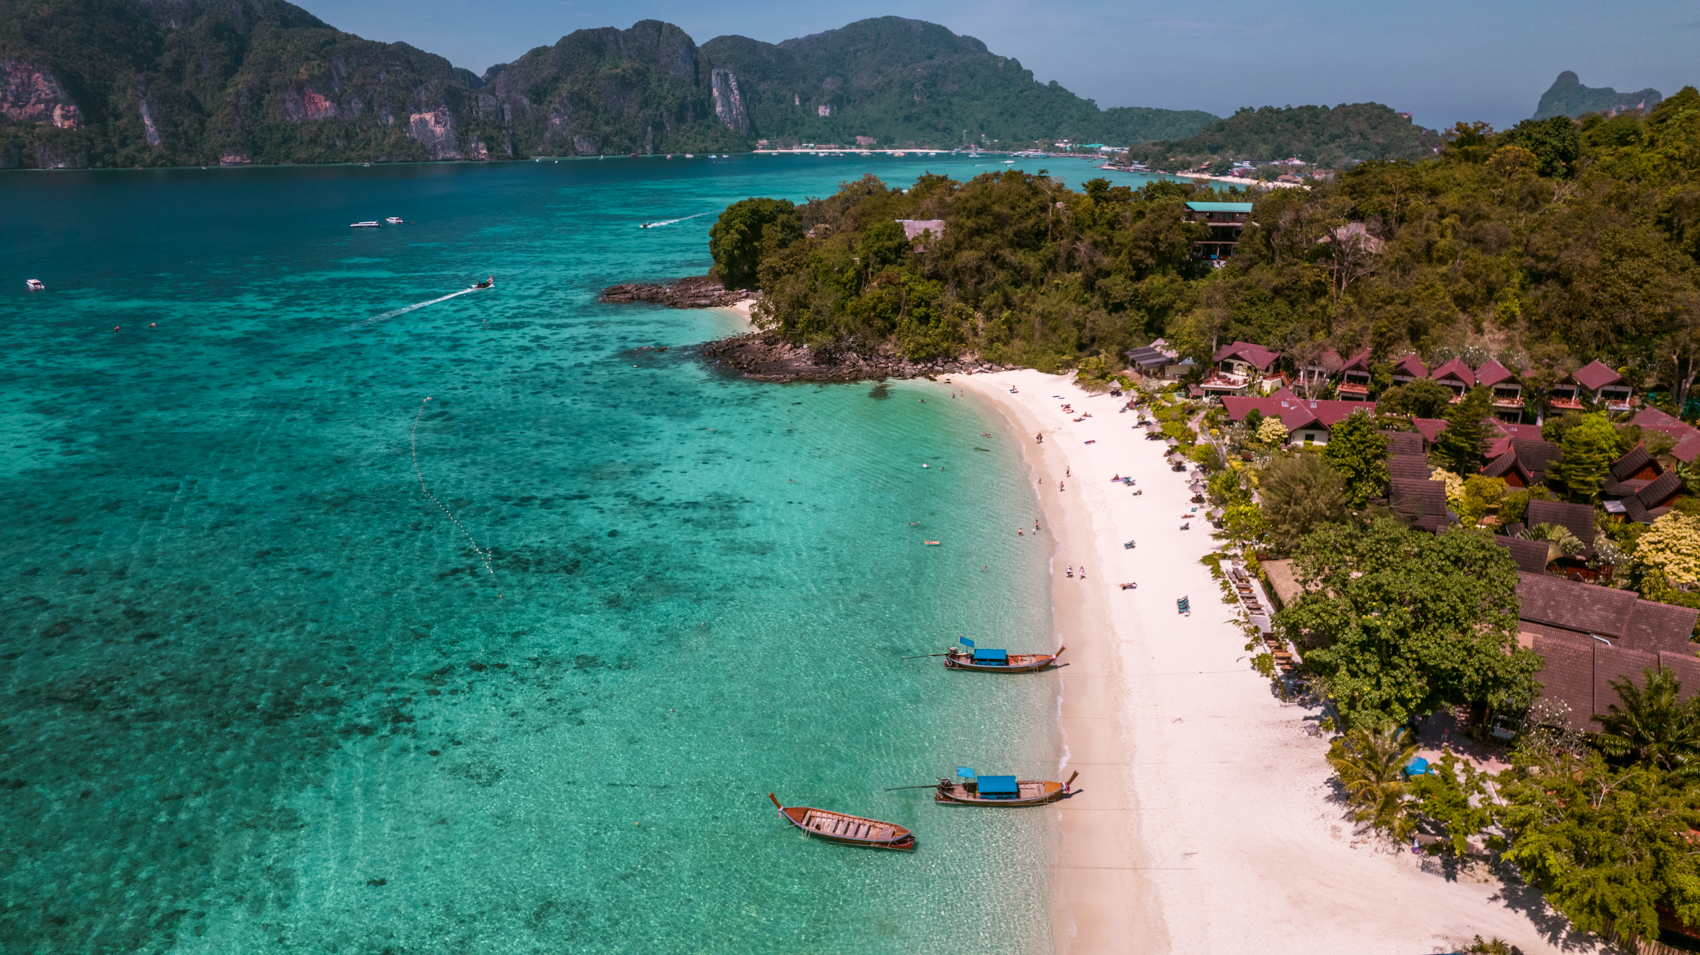 BUDGET: hoeveel kost een rondreis door Zuid-Thailand?